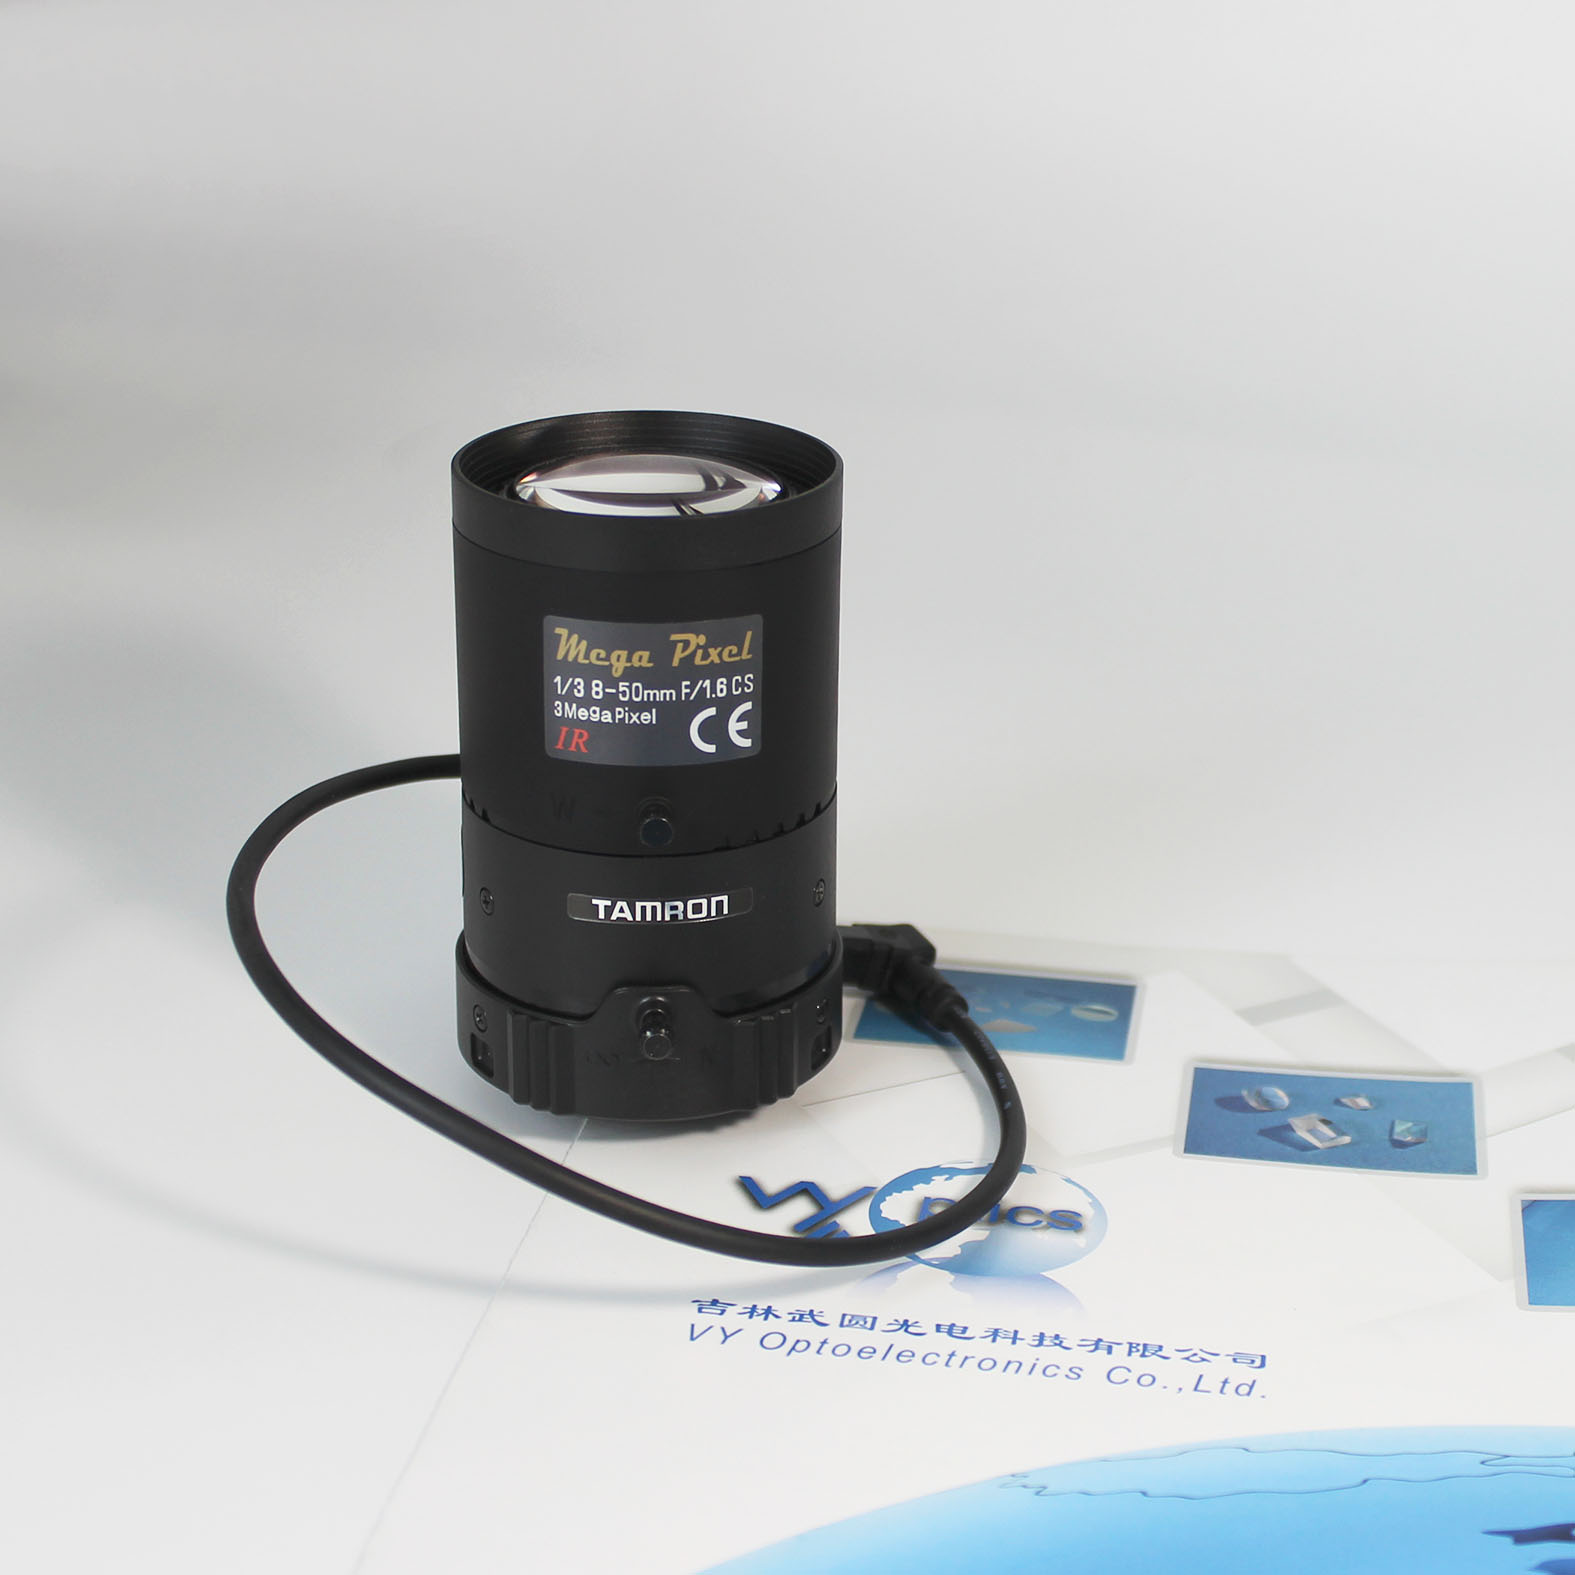 China Supplier Tamron Lens CS Mount M13VG850IR Tamron Camera Lens